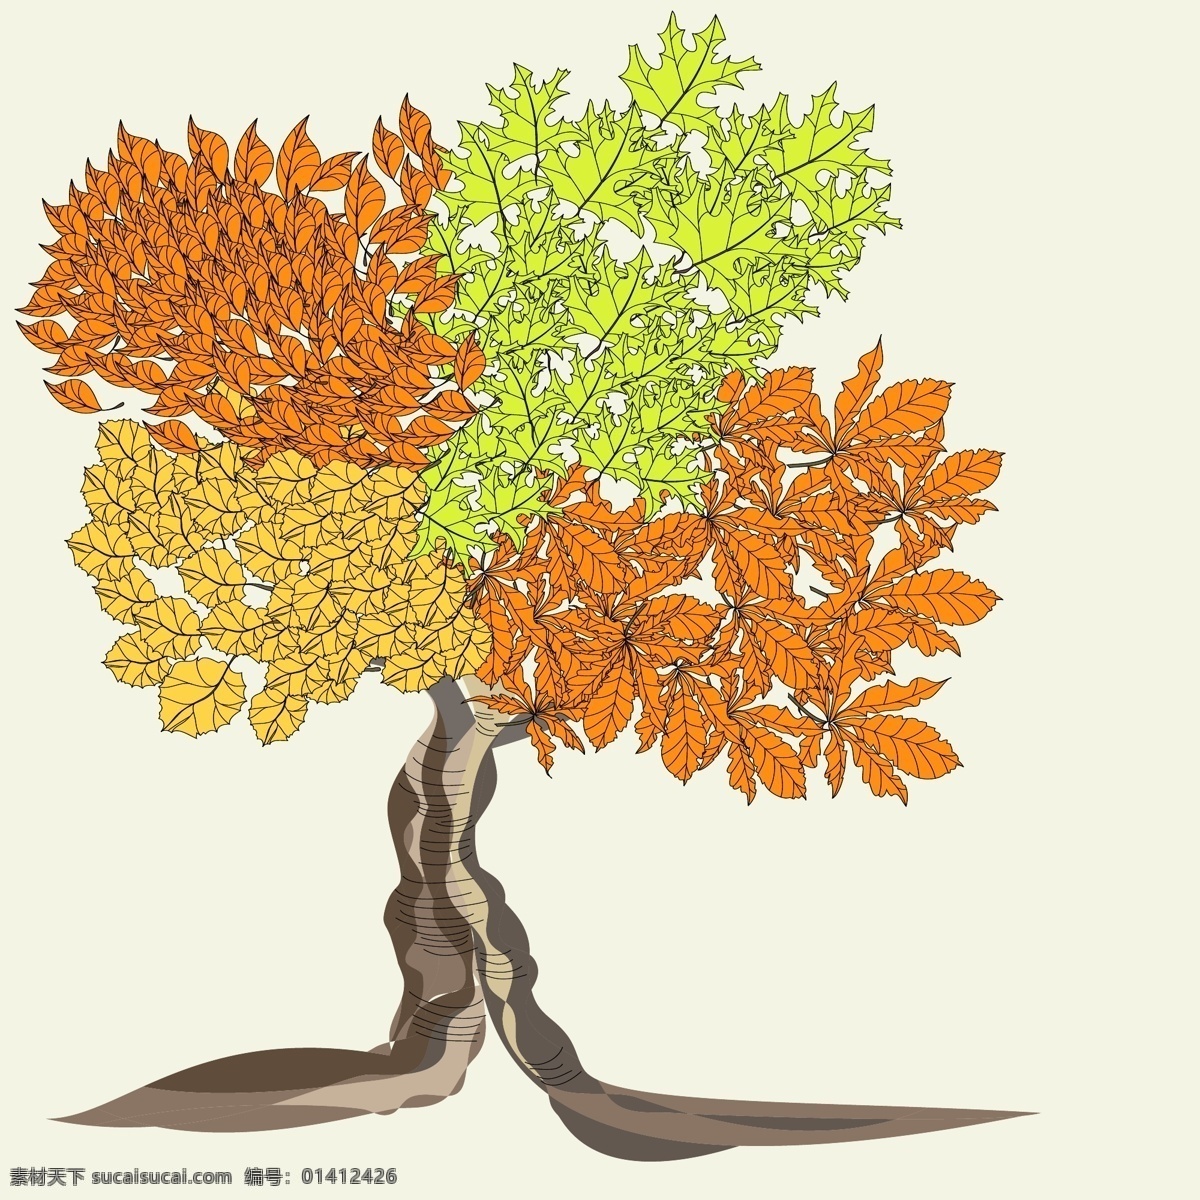 矢量 秋季 卡通 树木 背景 漫画风格 矢量素材 图案 彩色叶子 矢量图 其他矢量图